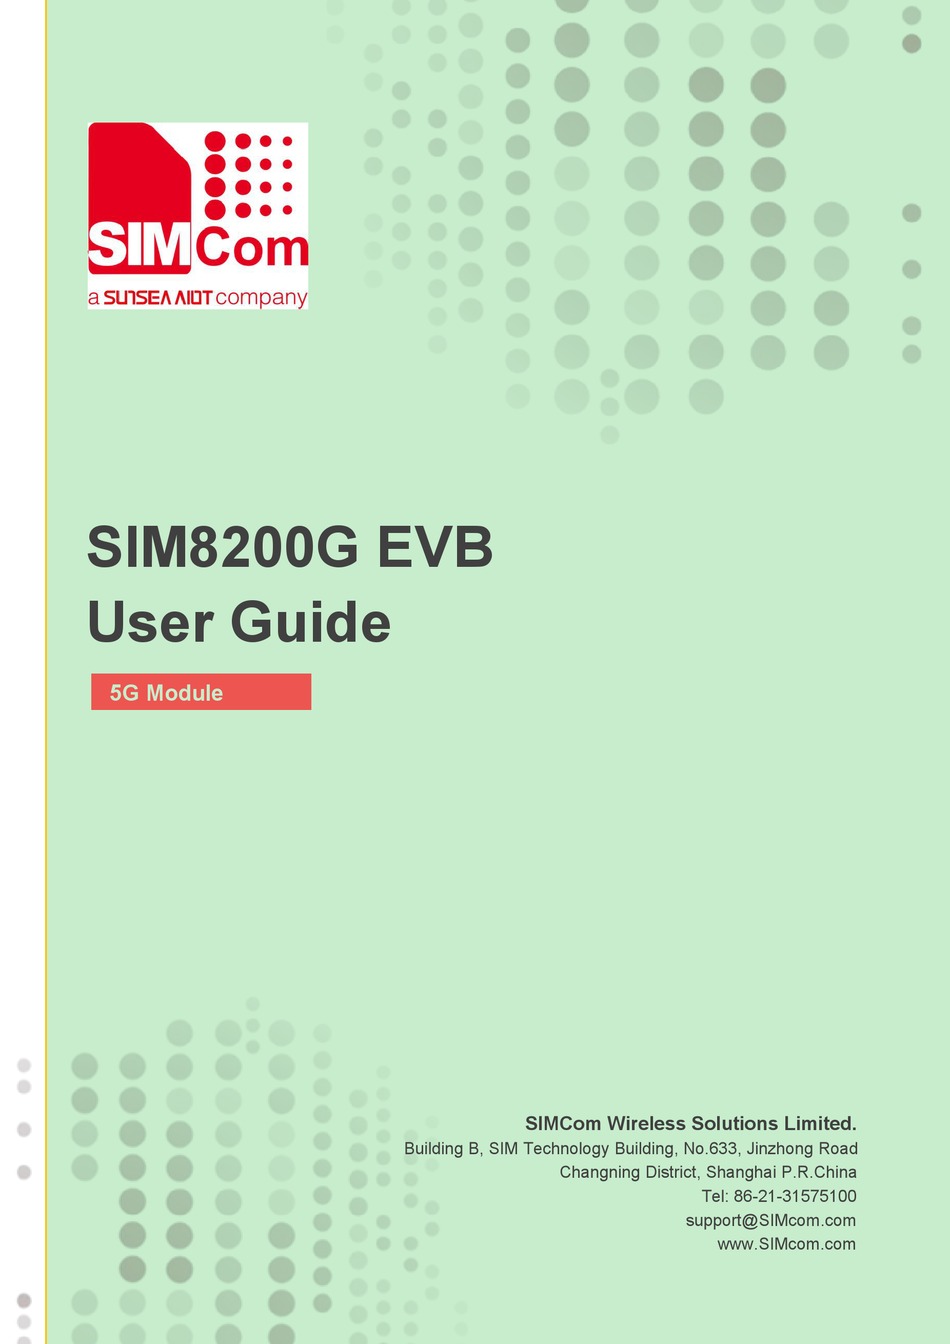 simcom flash update tool v1 10